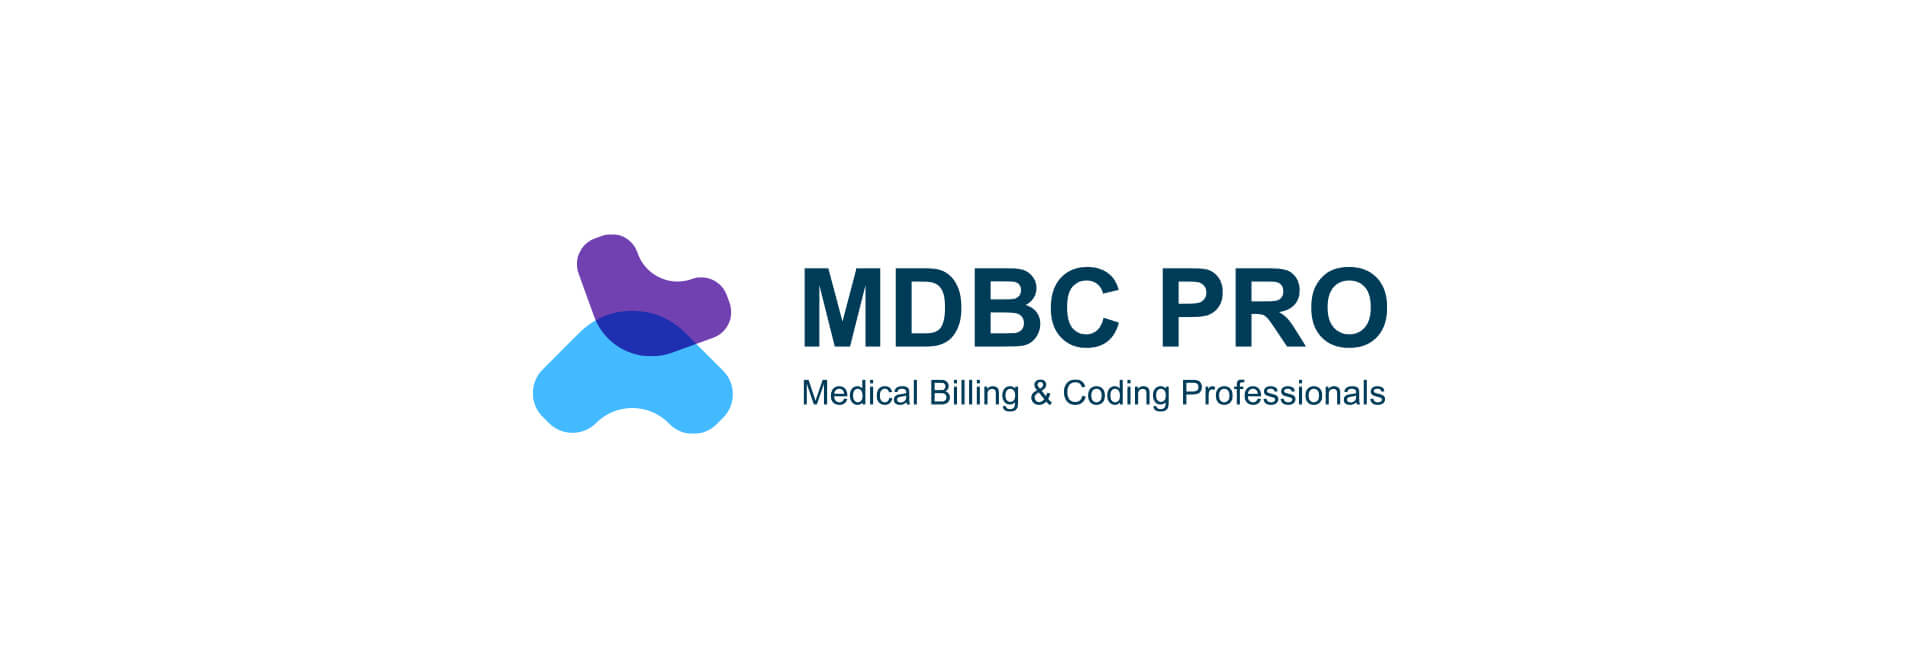 MDBC Pro